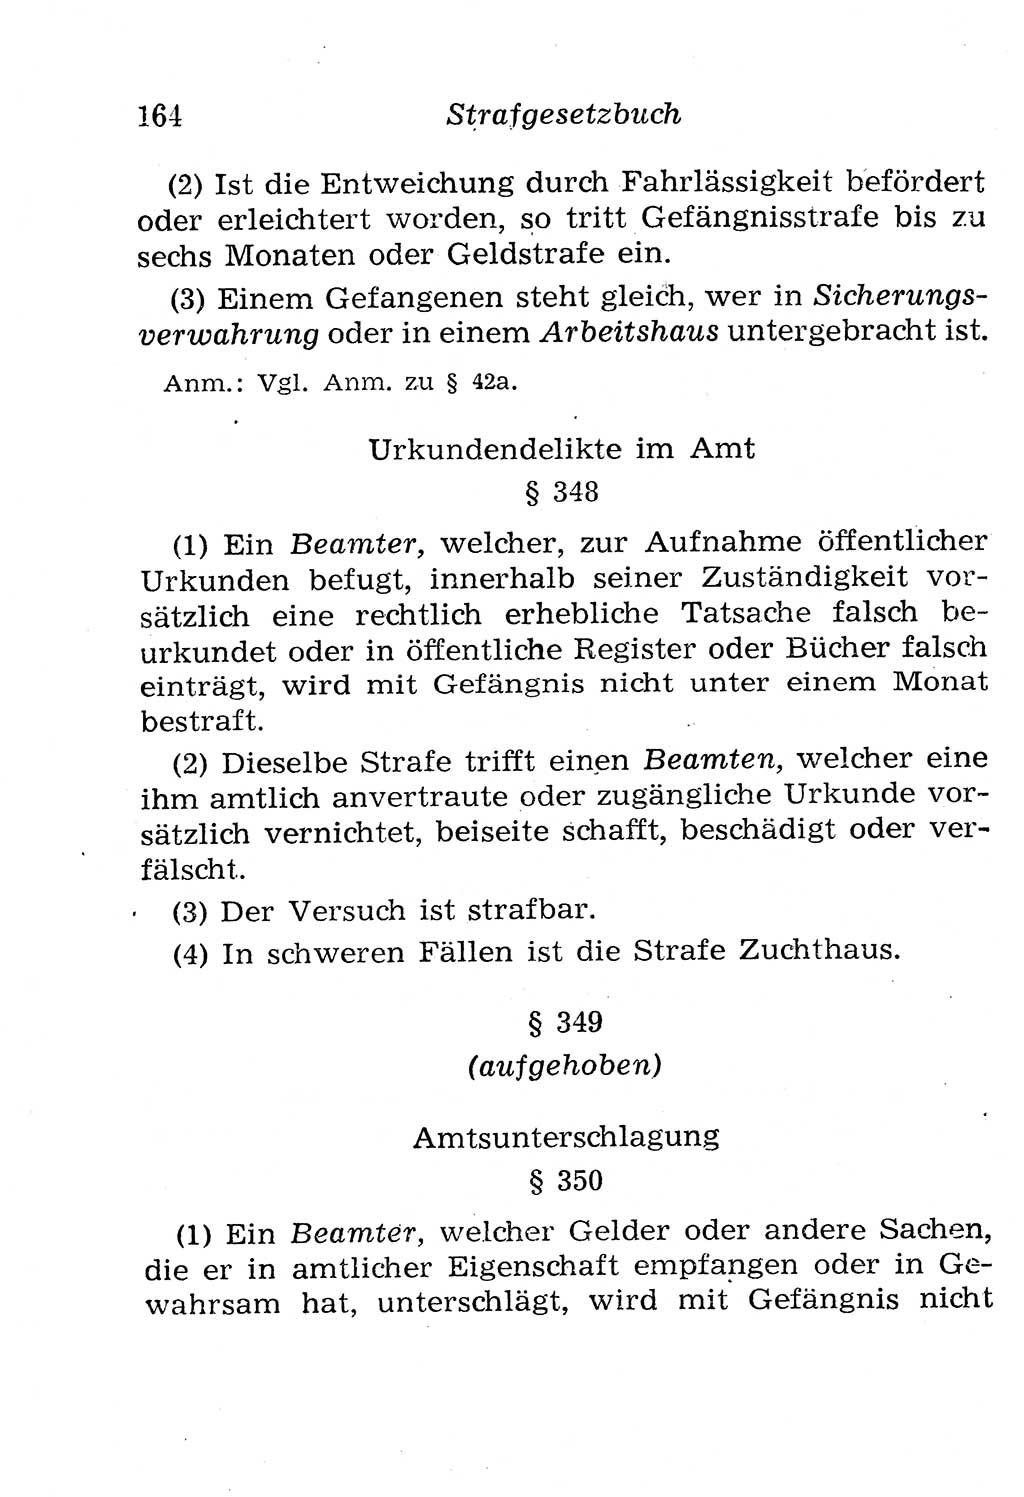 Strafgesetzbuch (StGB) und andere Strafgesetze [Deutsche Demokratische Republik (DDR)] 1958, Seite 164 (StGB Strafges. DDR 1958, S. 164)